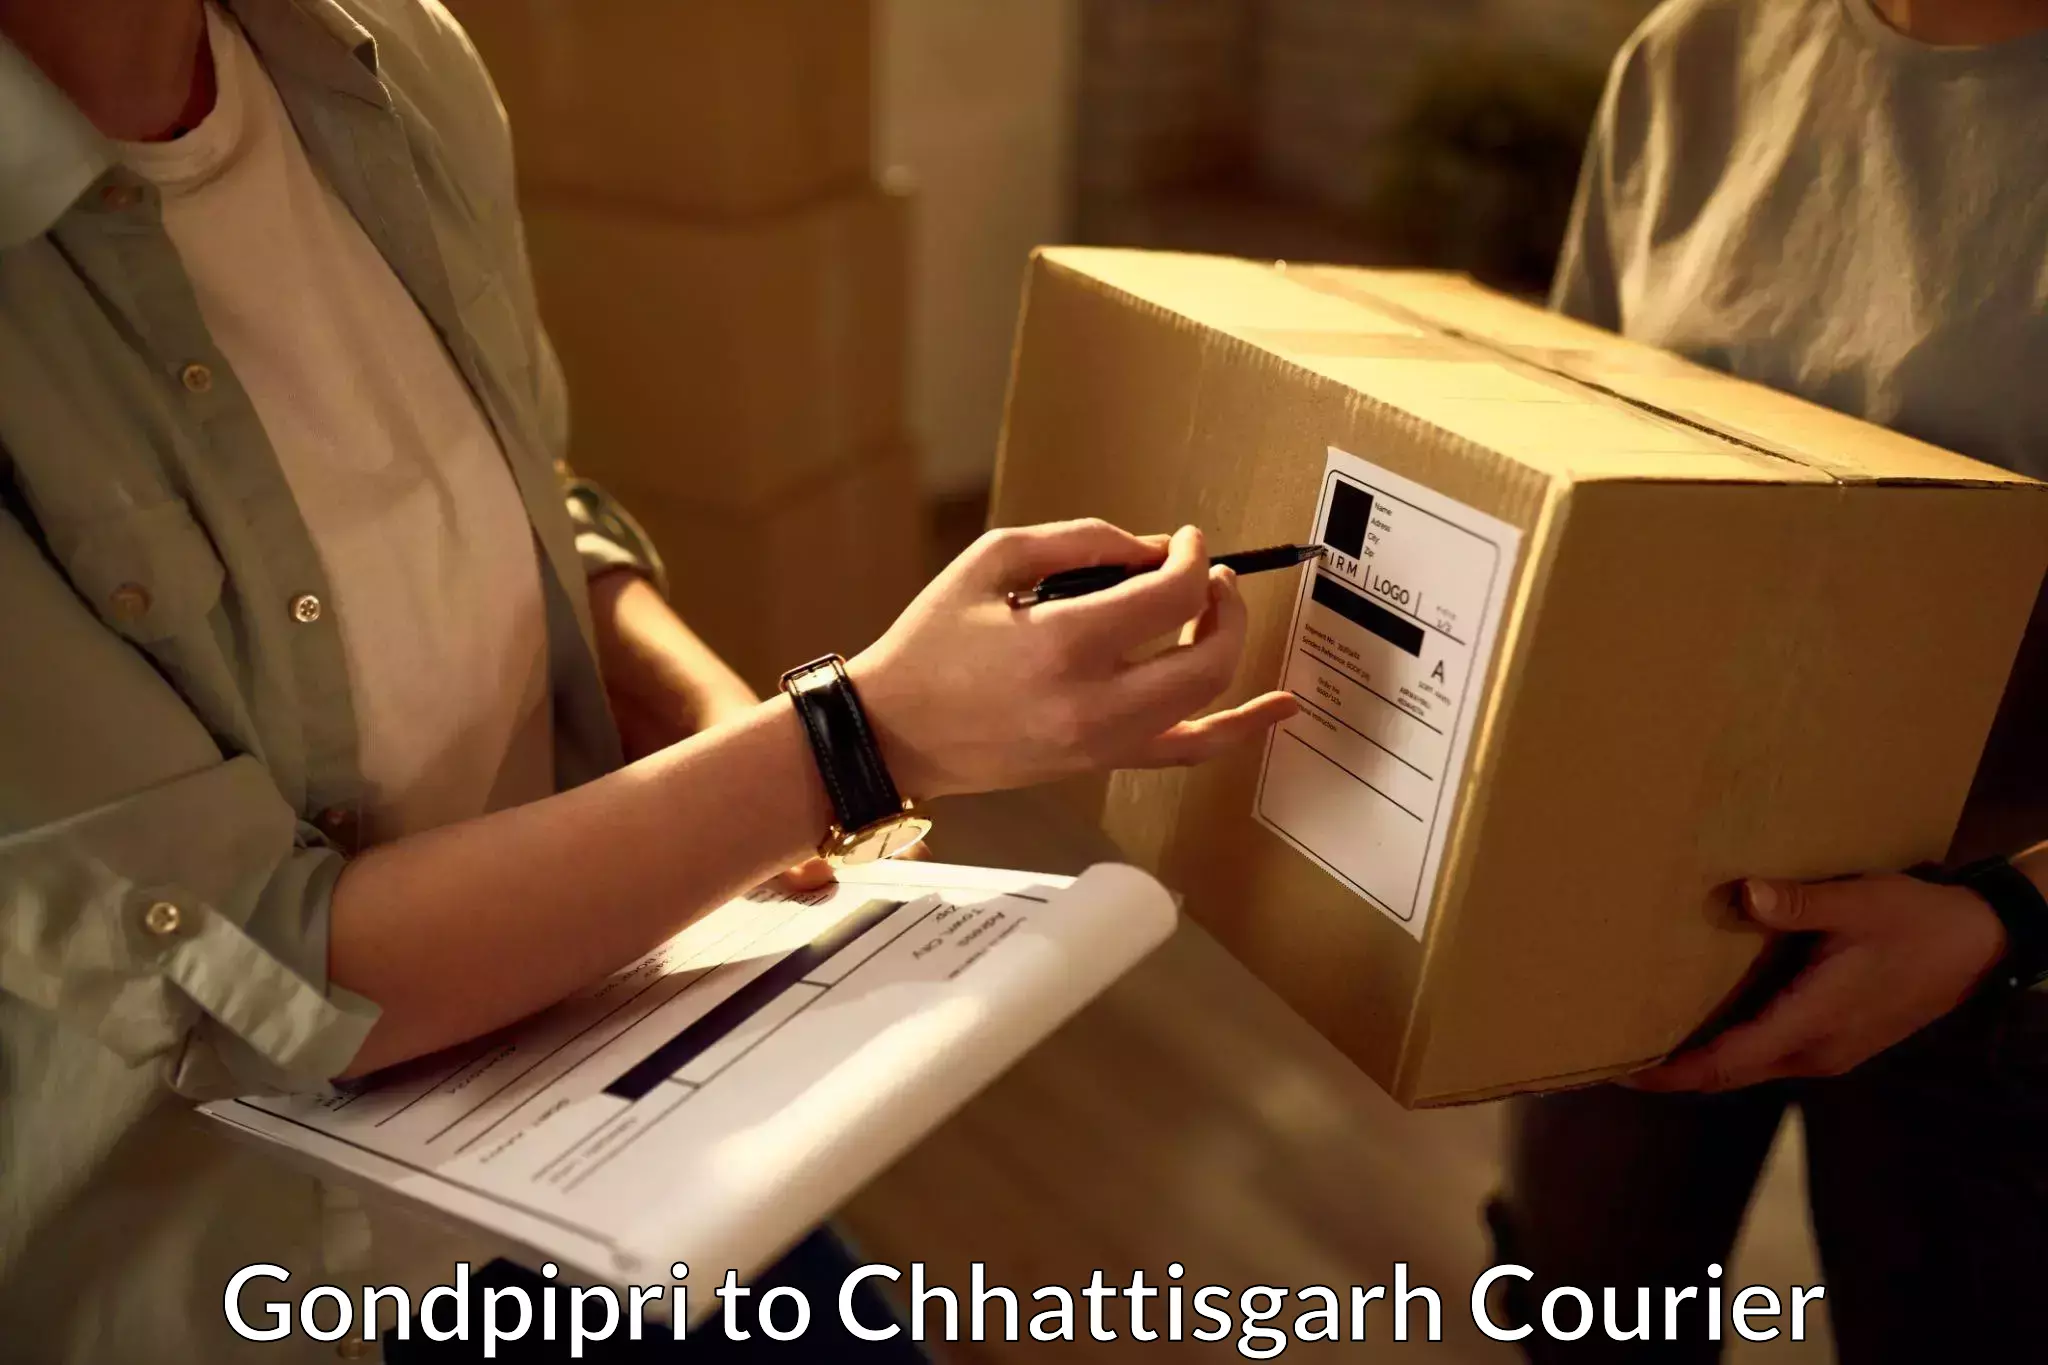 Courier services in Gondpipri to Jashpur